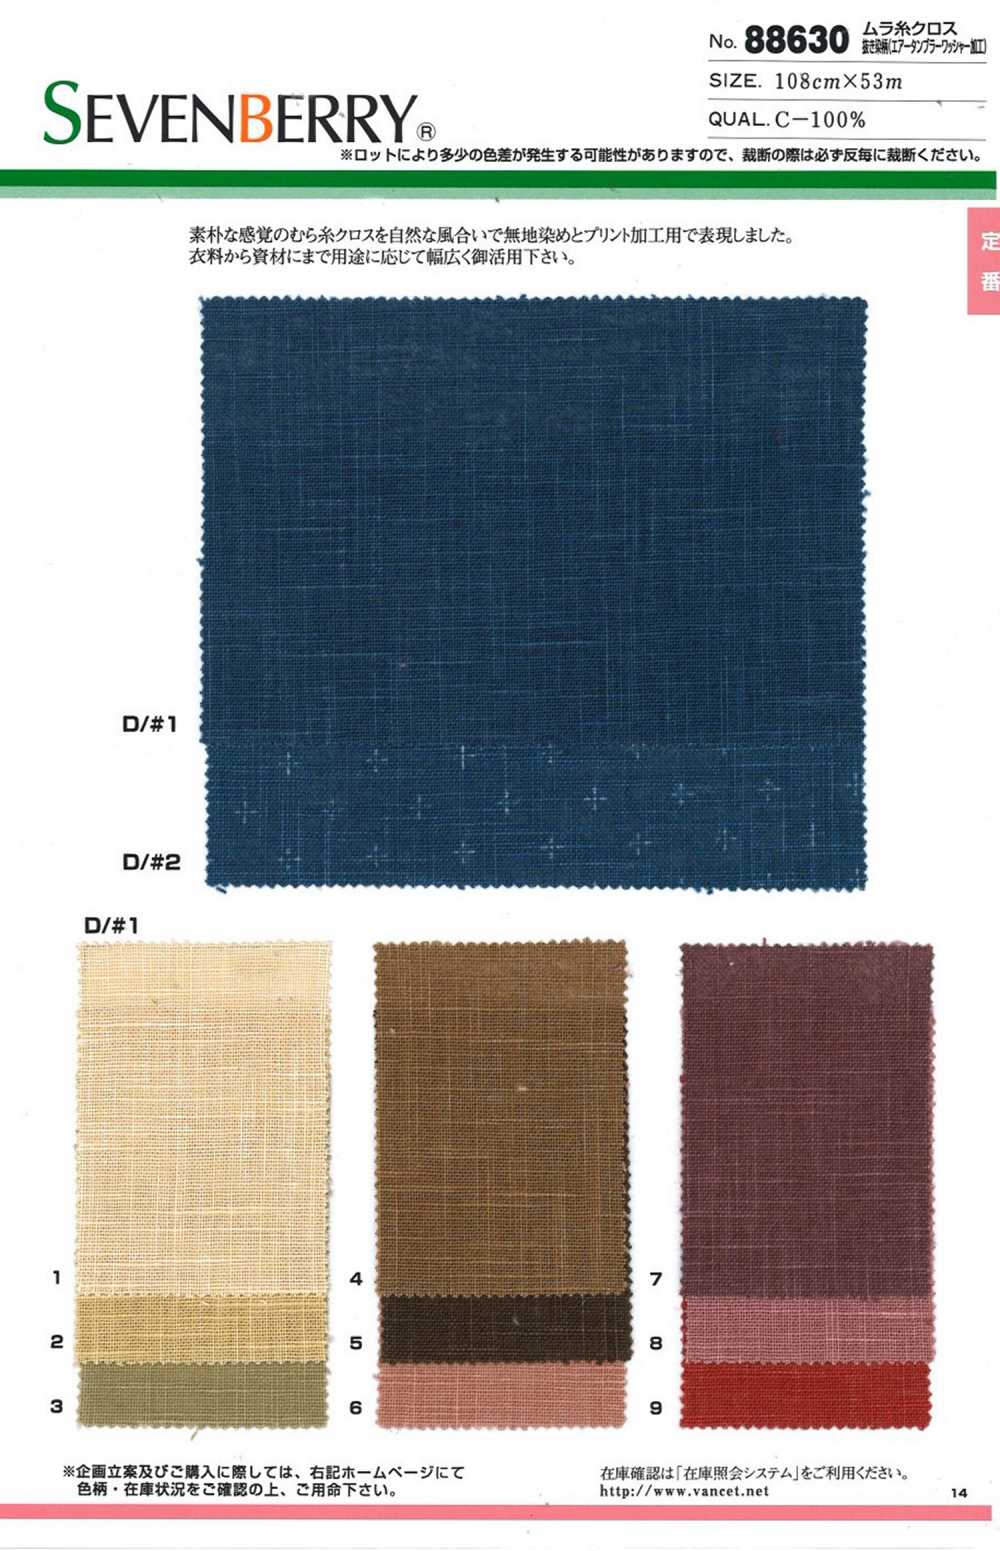 88630 SEVENBERRY Ungleichmäßiges Fadenentladungs-Färbemuster (Luftwäscher-Verarbeitung)[Textilgewebe] VANCET